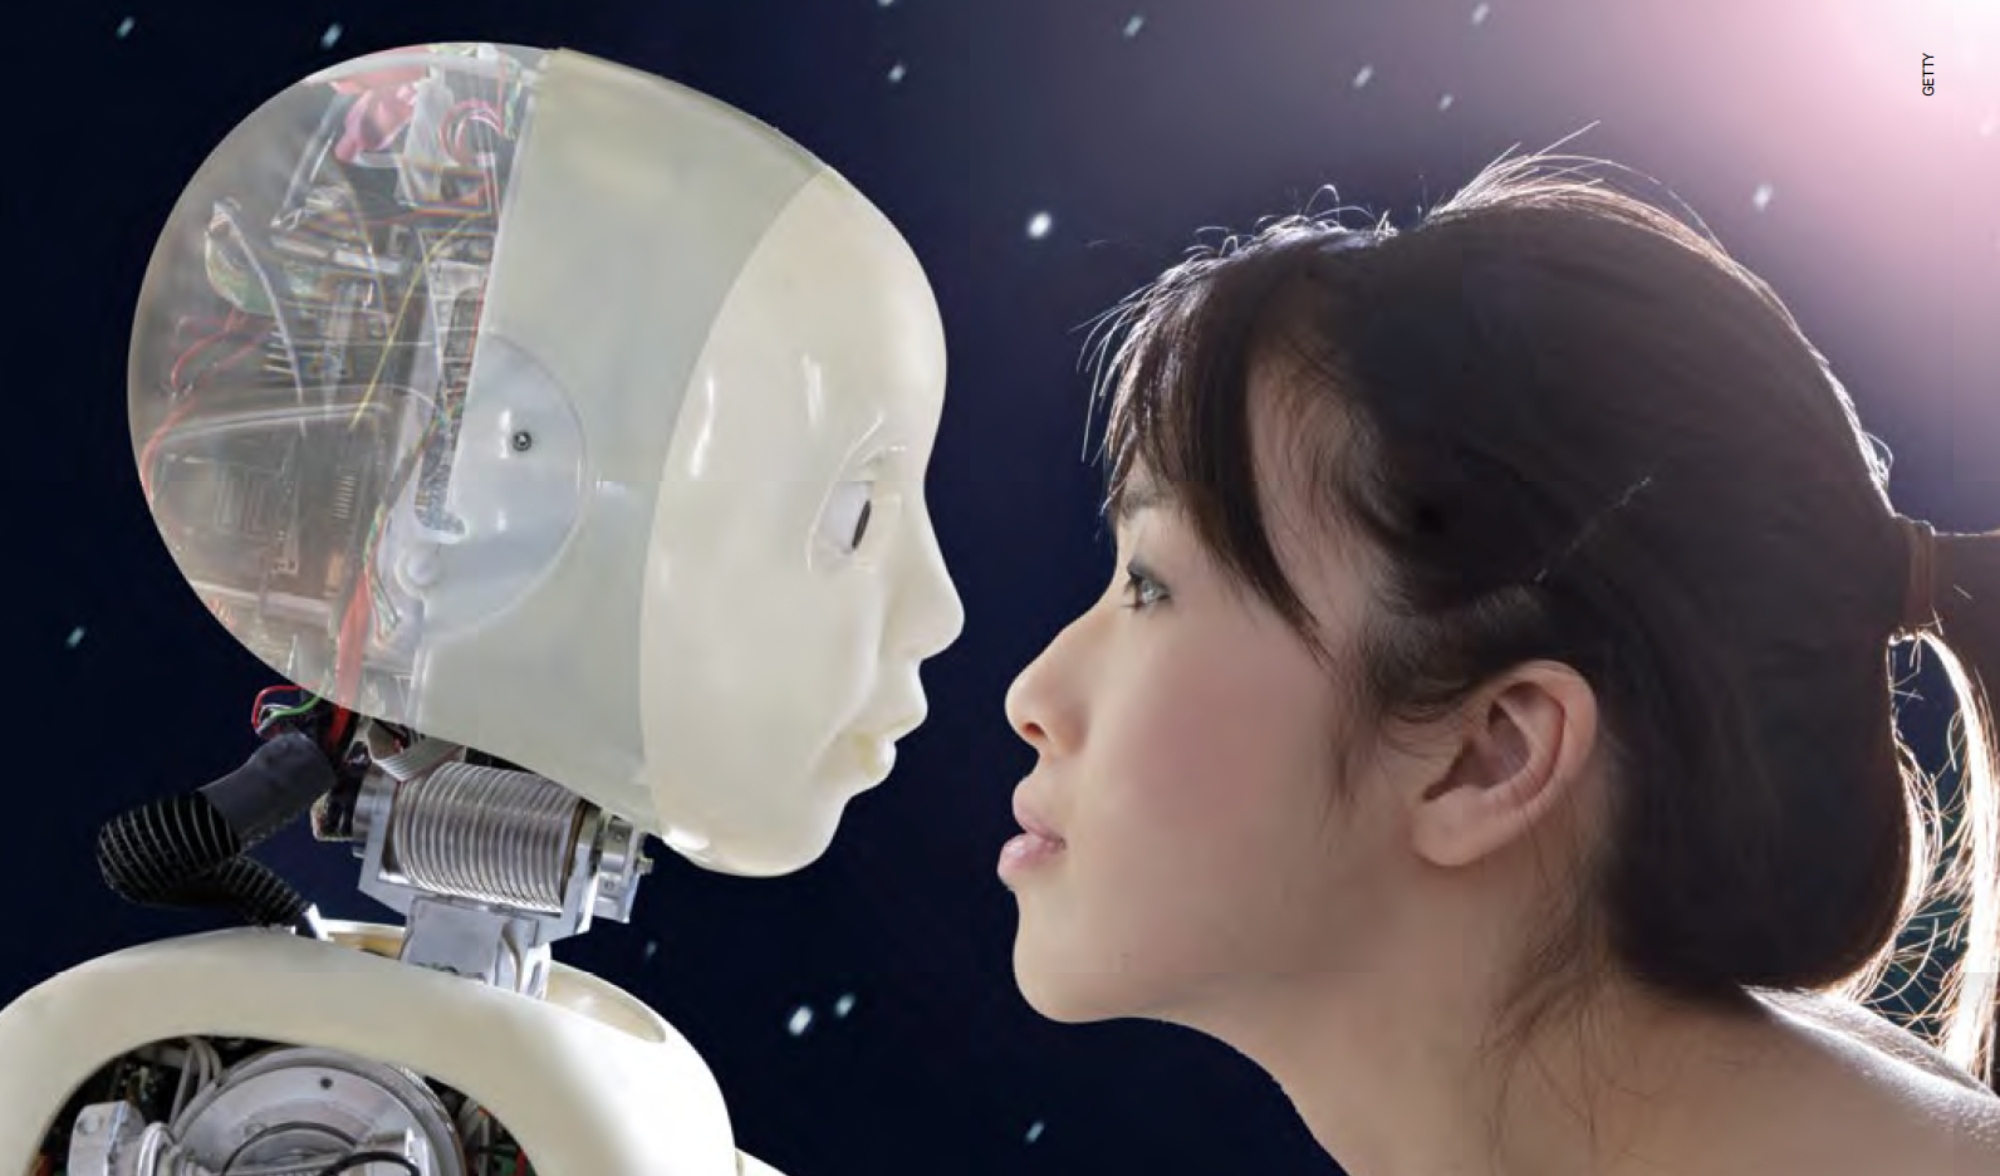 La inteligencia artificial dota a las máquinas de habilidades para aprender a partir de la experiencia y, sobre todo, de su interacción con los humanos. Pero no todos los individuos les enseñarían las mismas cosas, ni con el mismo enfoque moral. ¿Qué aprendería el robot de alguien con la personalidad de un psicópata? ¿Cómo controlar eso?